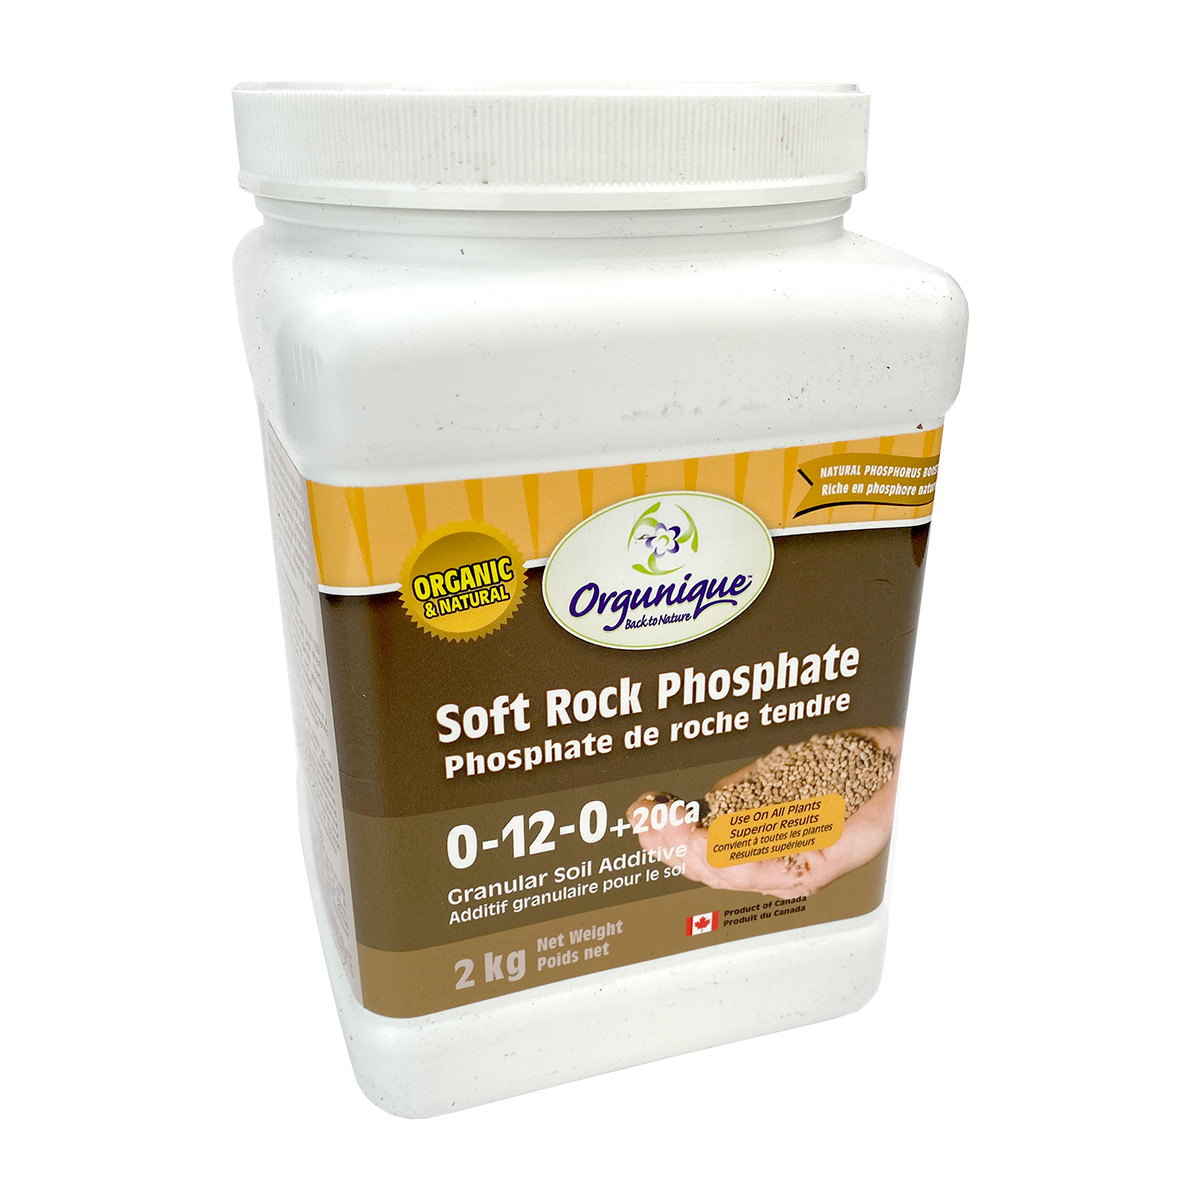 Orgunique Soft Rock Phosphate 0-12-0+20ca2kg